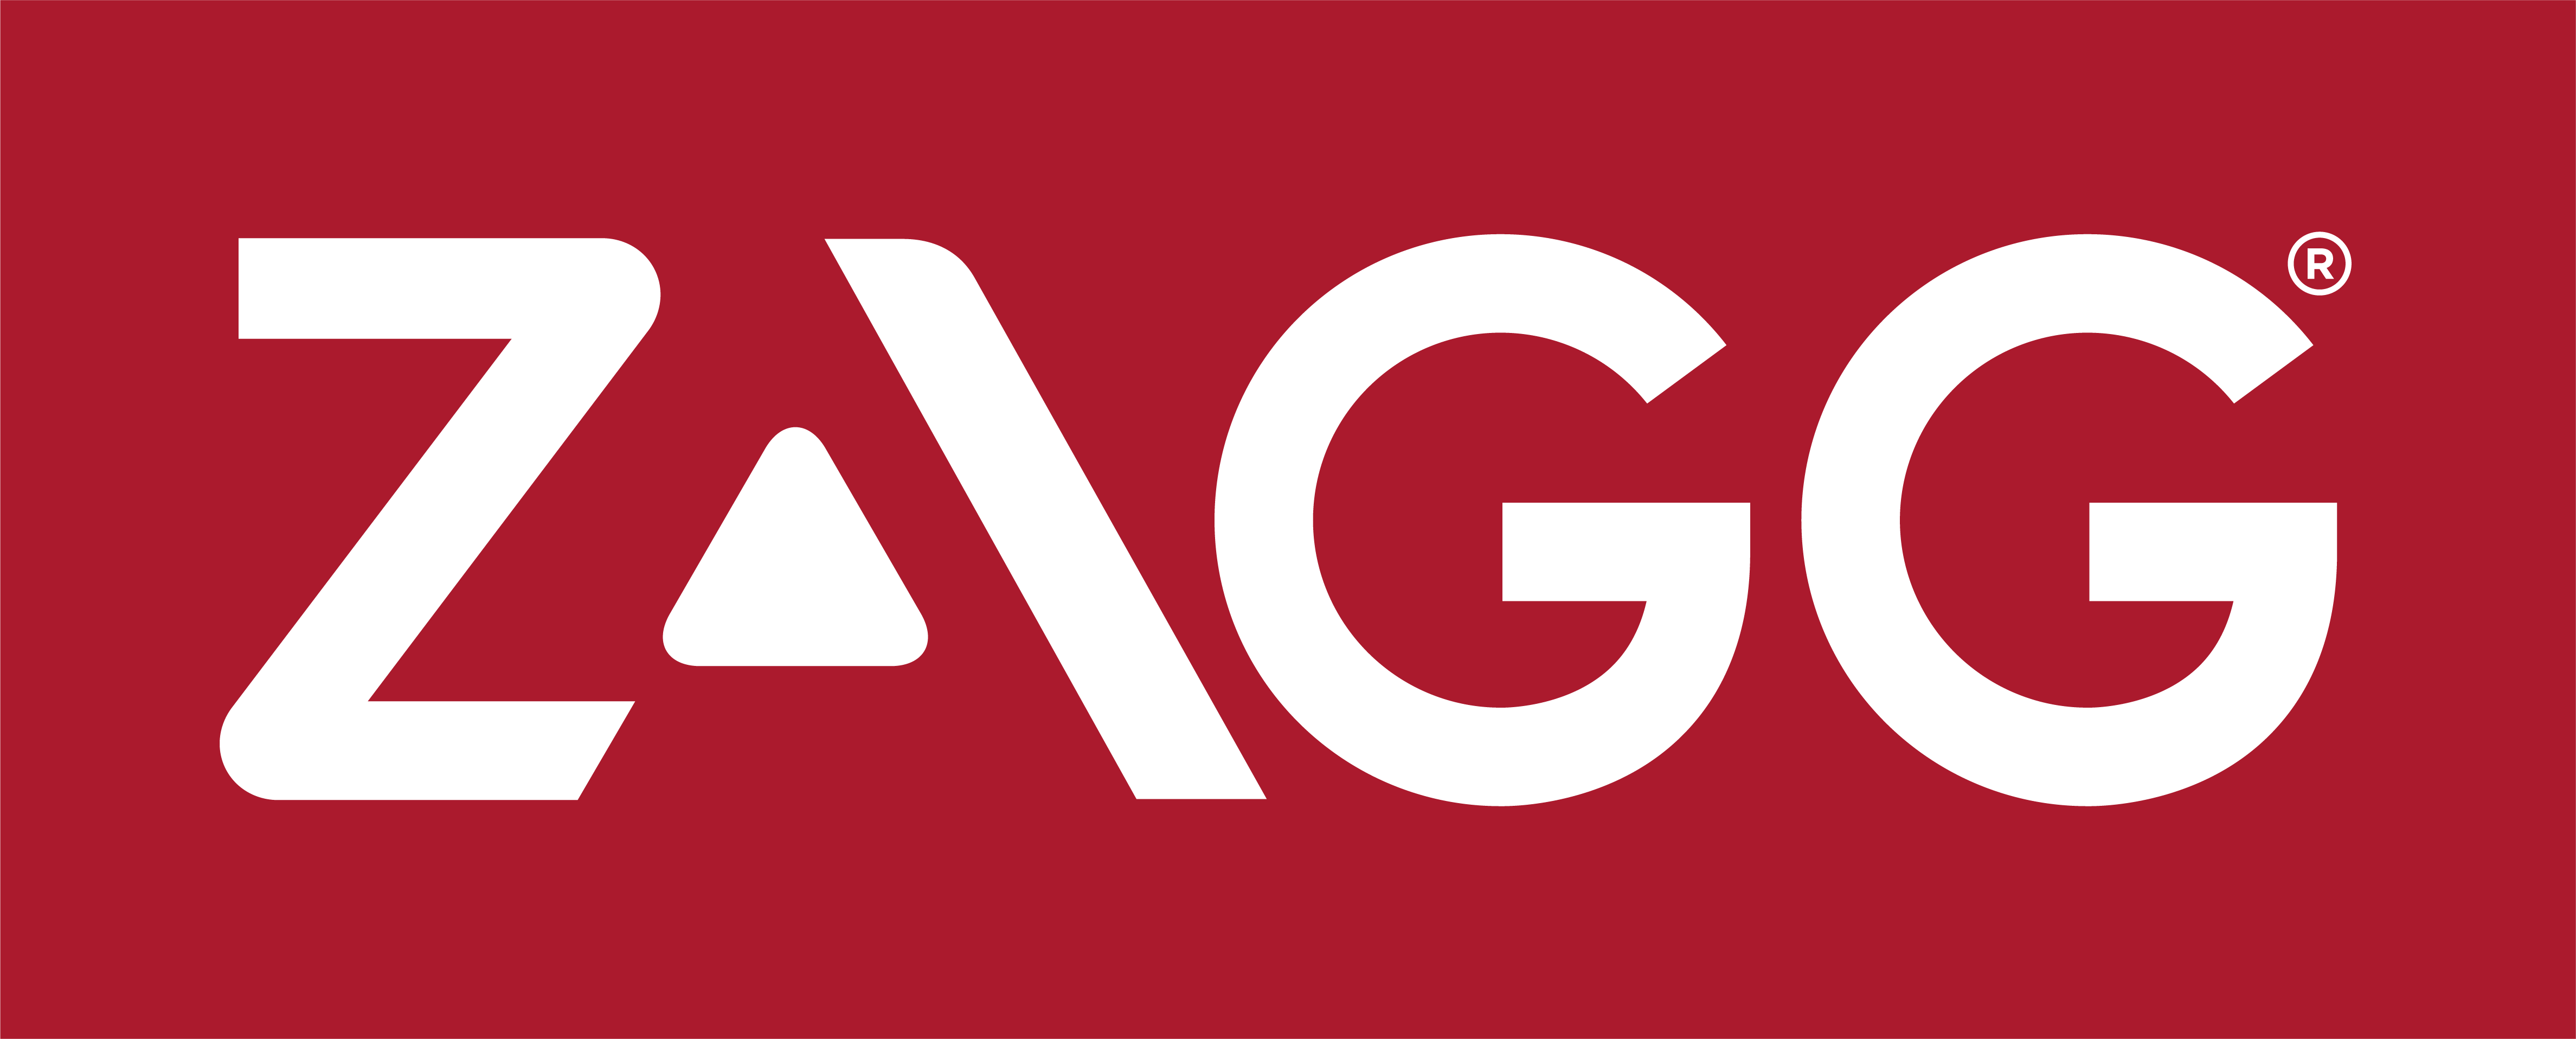 ZAGG Inc Reports Rec